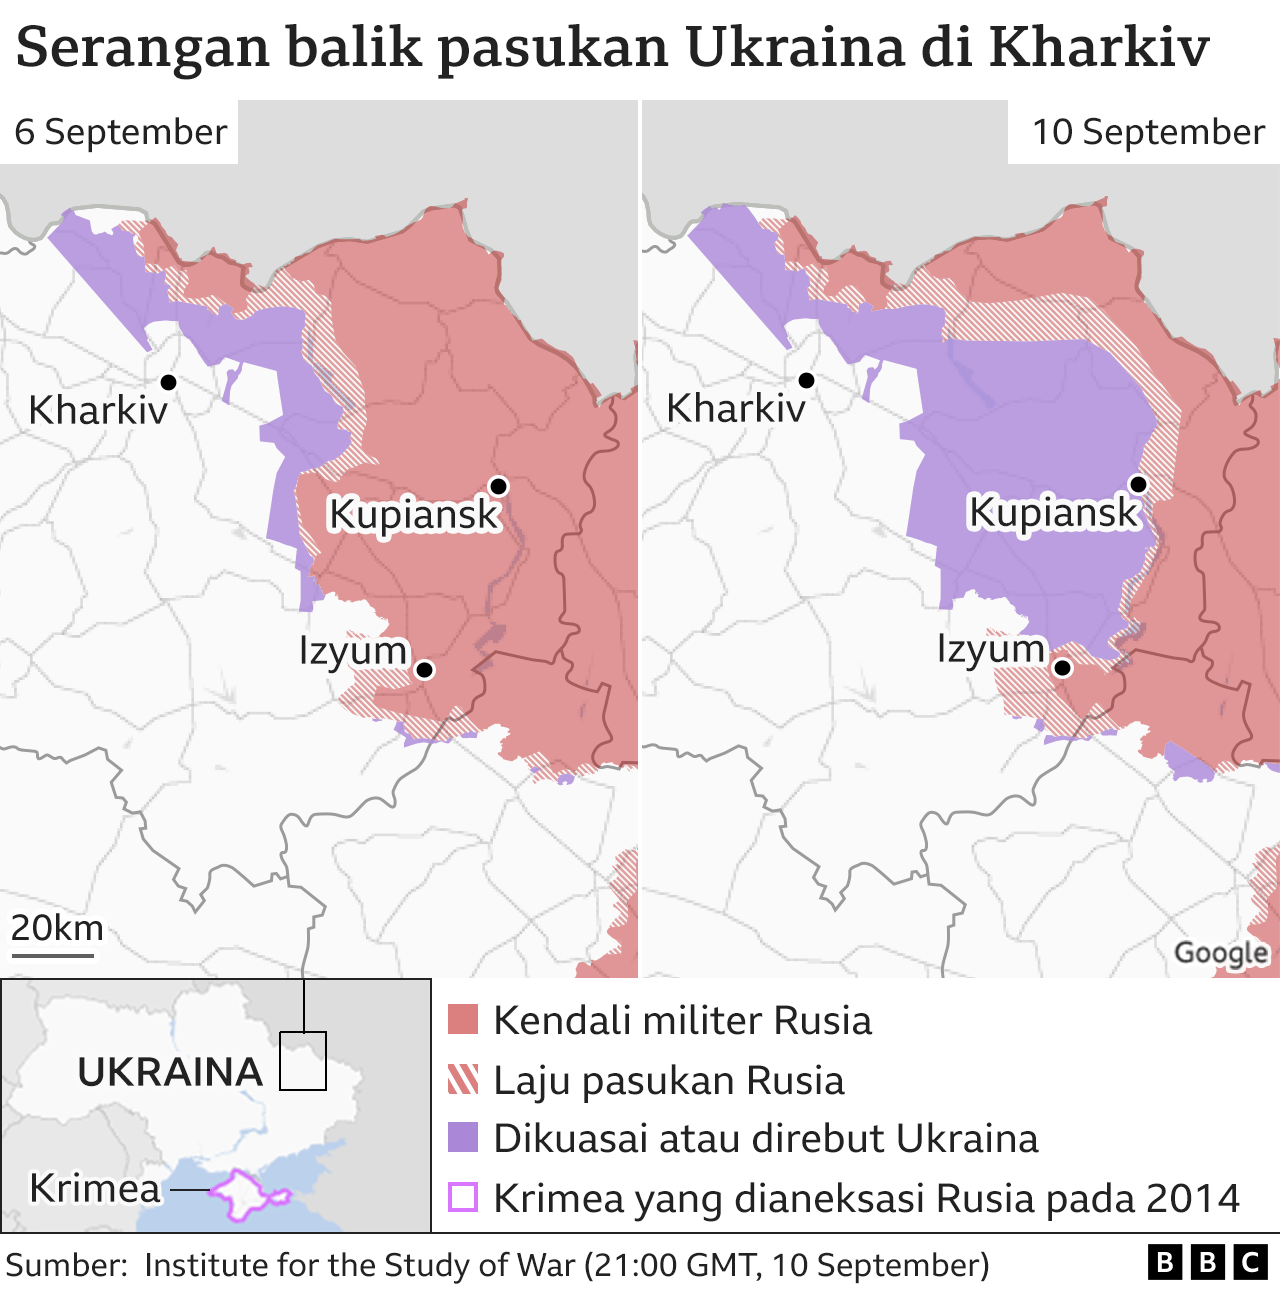 Peta serangan balik pasukan Ukraina di Kharkiv